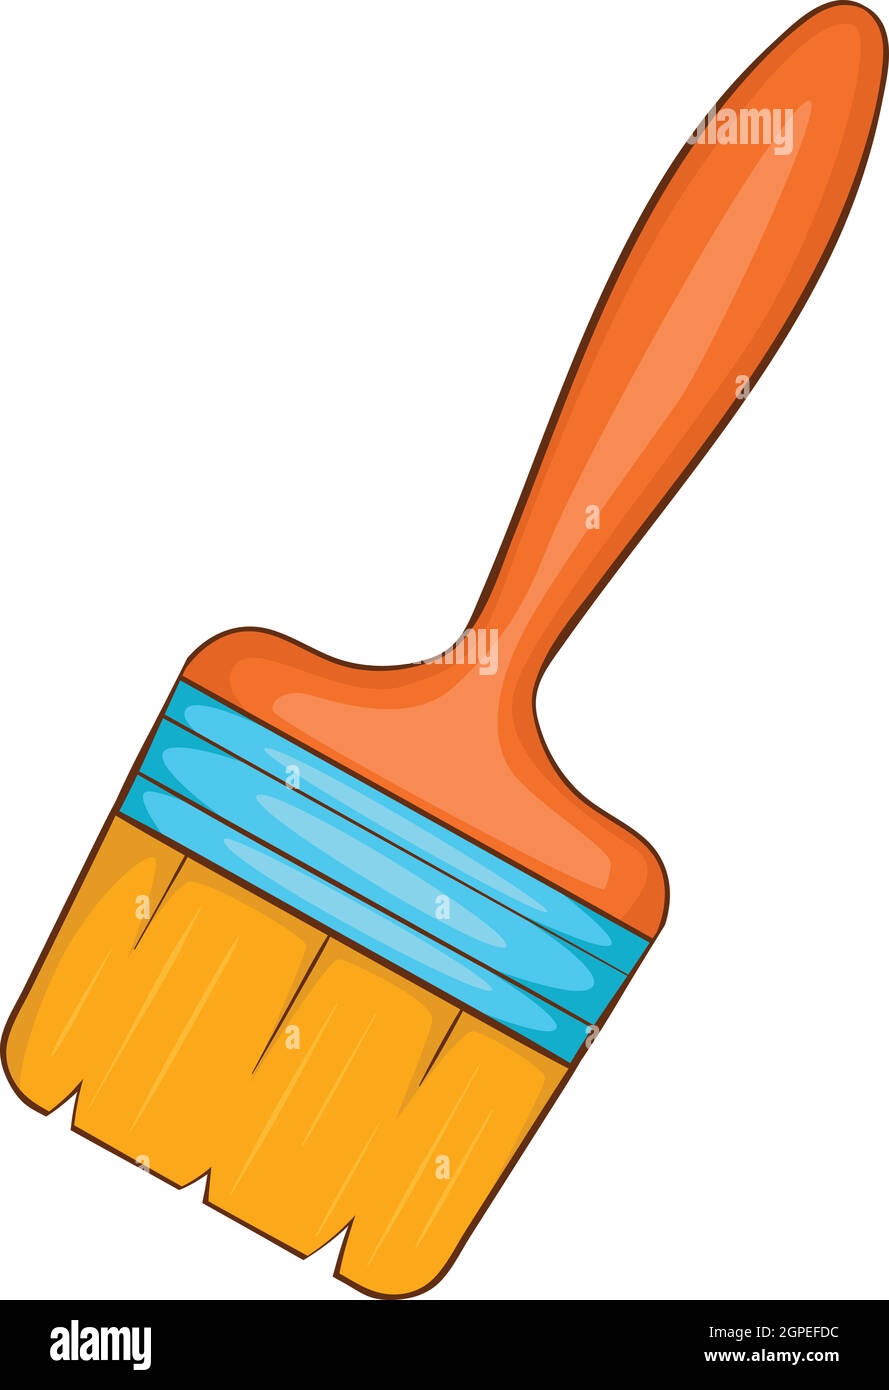 Paint brush icon, cartoon style Stock Vector